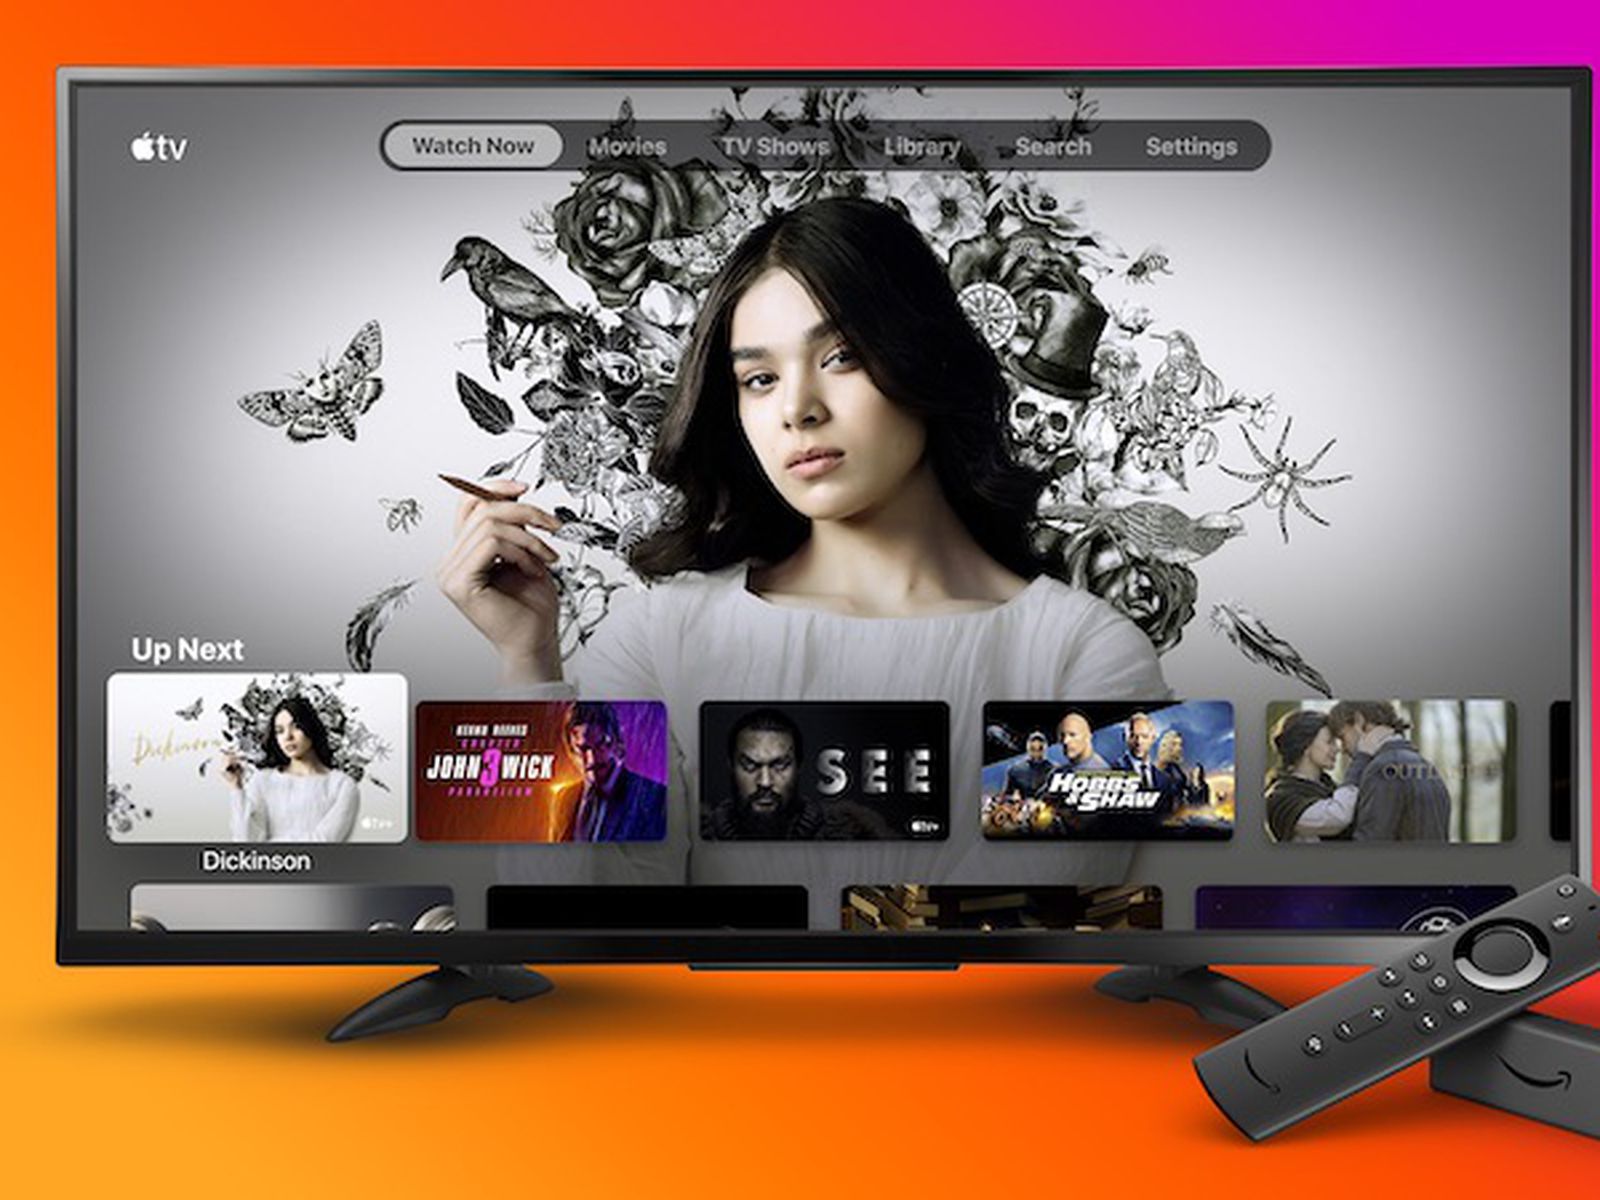 Apple Tv App Now Available On Amazon Fire Tv Sticks Macrumors